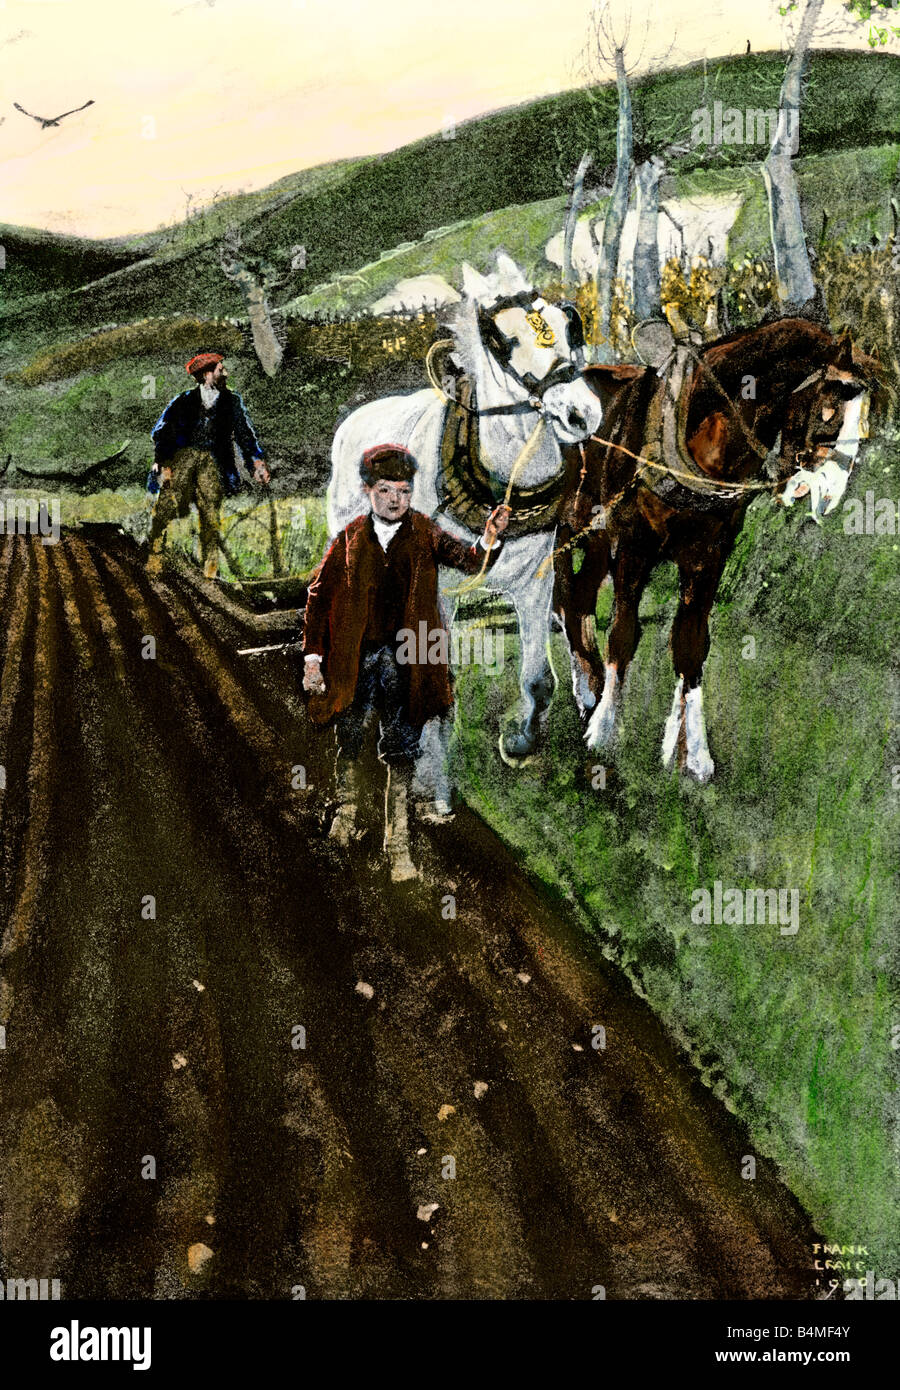 Bauernhof Junge, der ein Team der Pferde, während sein Vater lenkt den Pflug. Handcolorierte halftone einer Abbildung Stockfoto